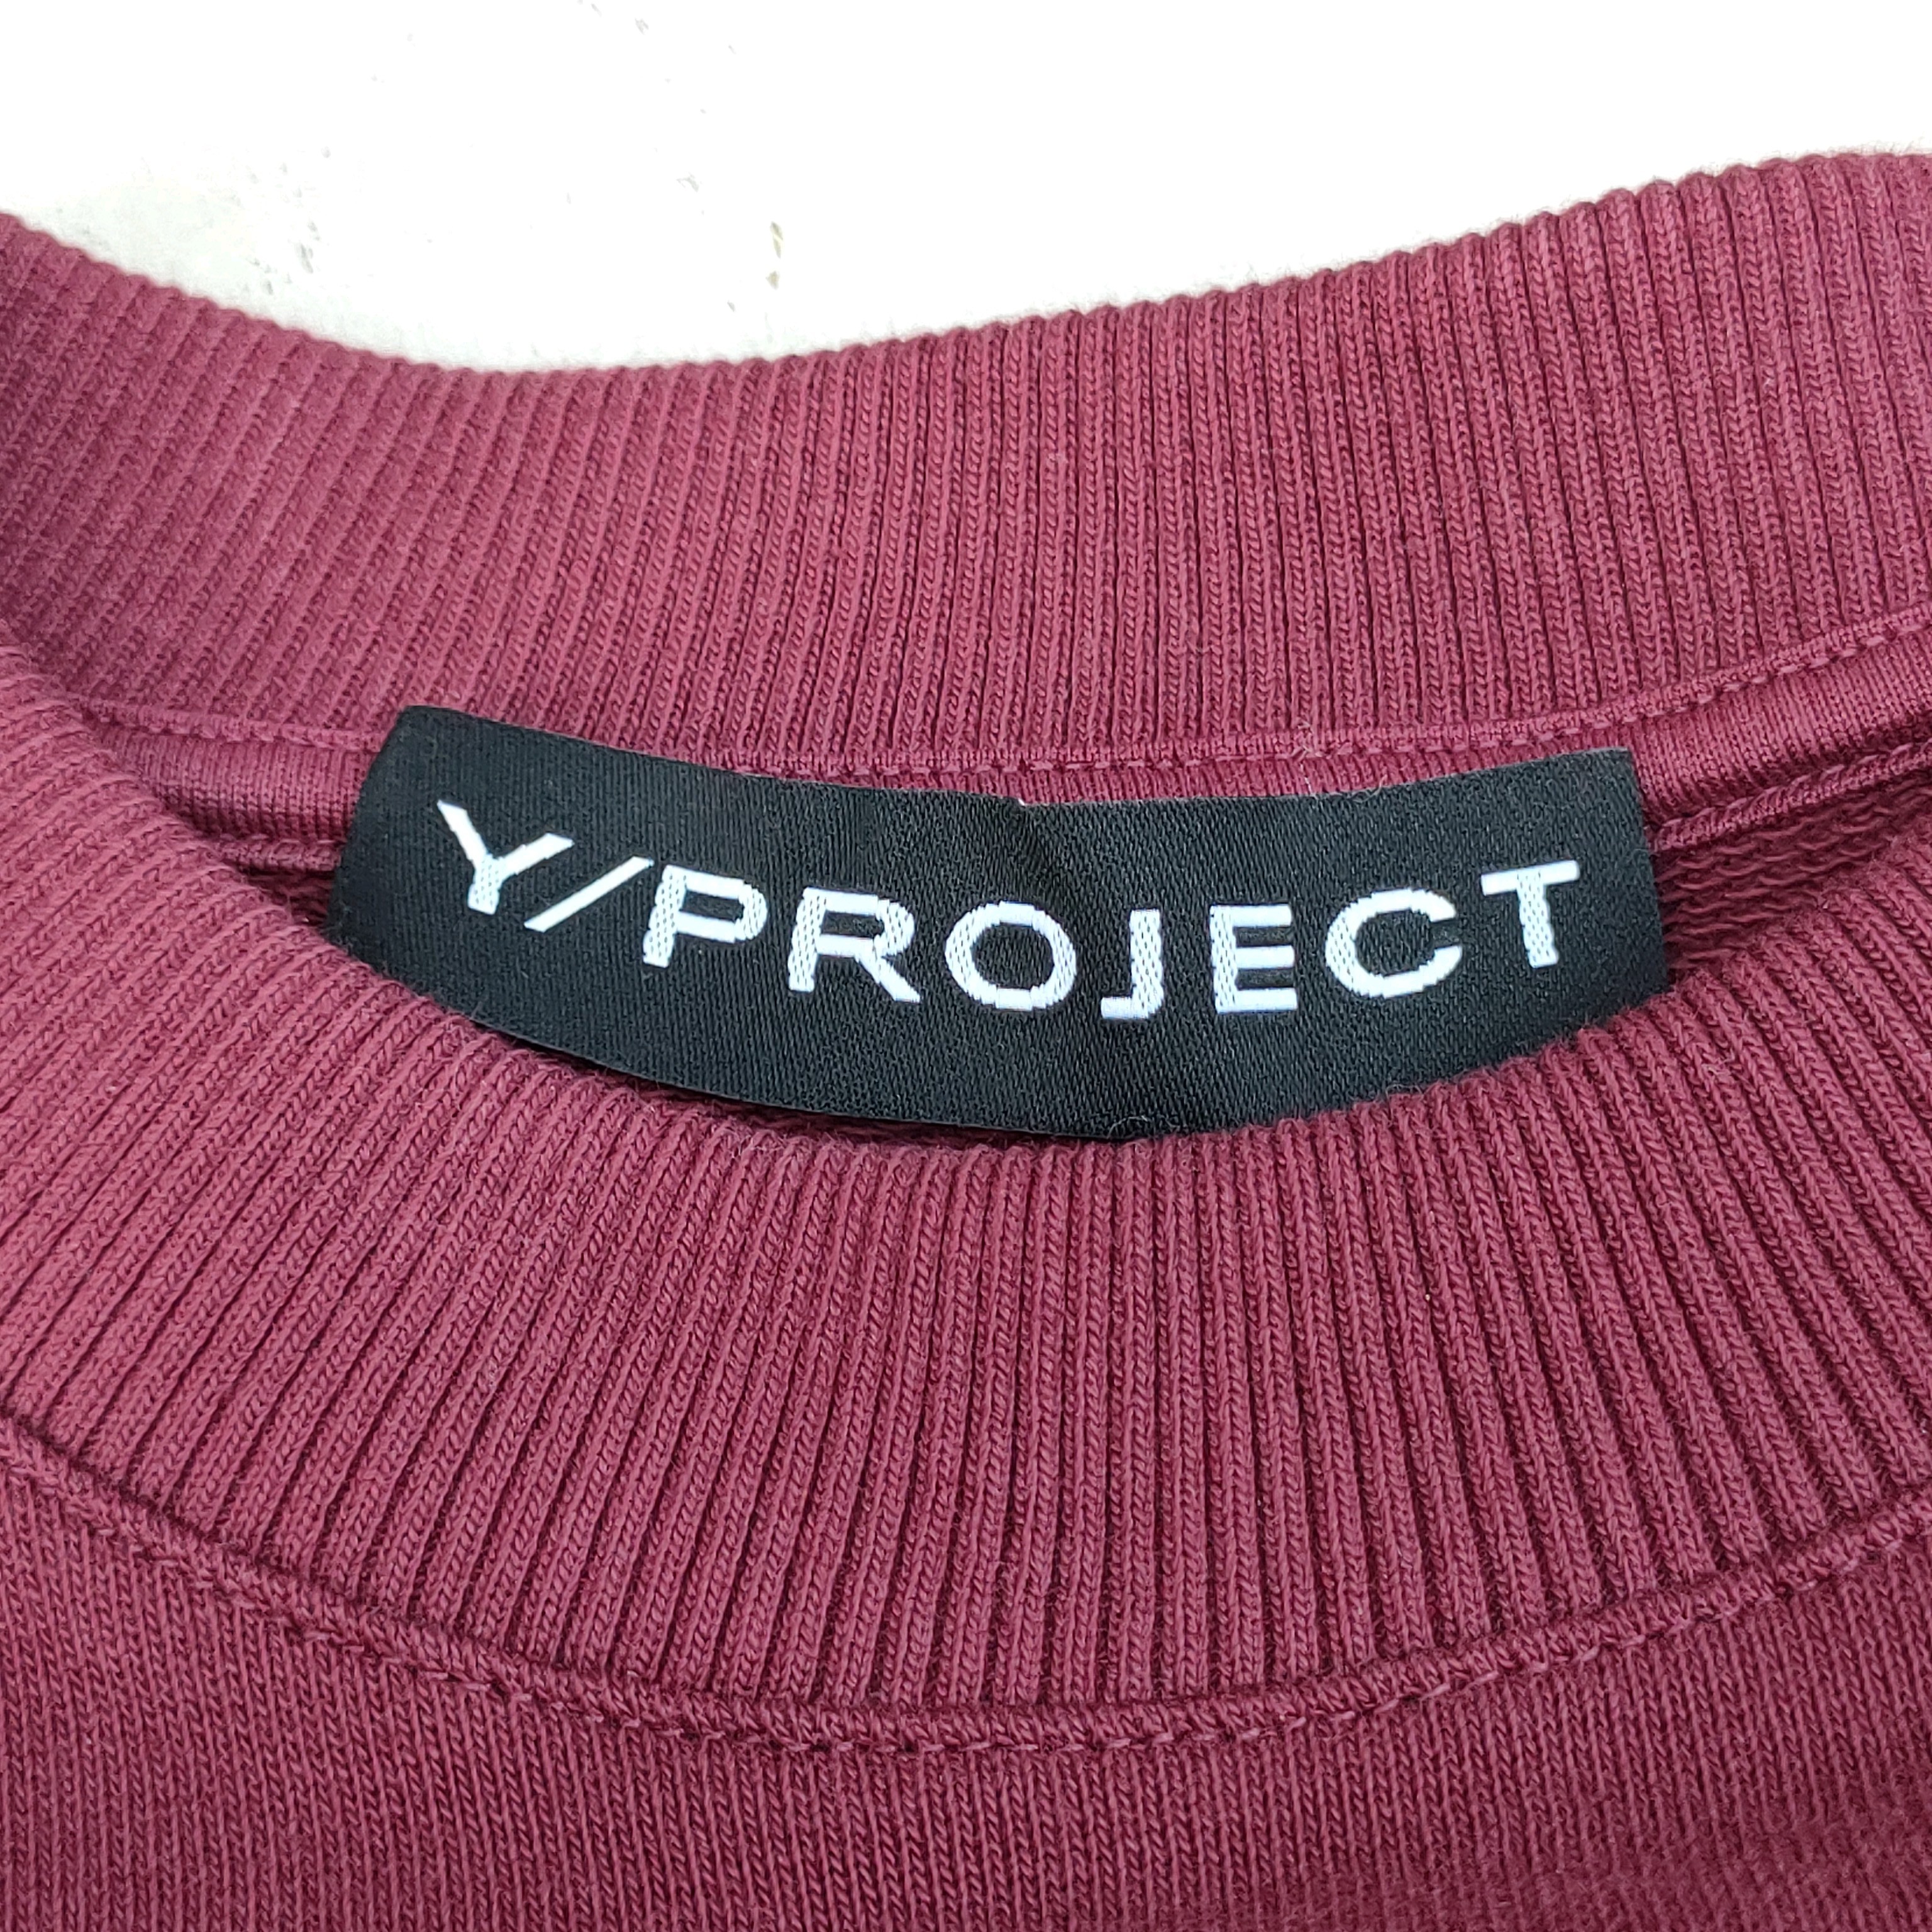 Y/Project ワイプロジェクト スウェット S グレーx赤